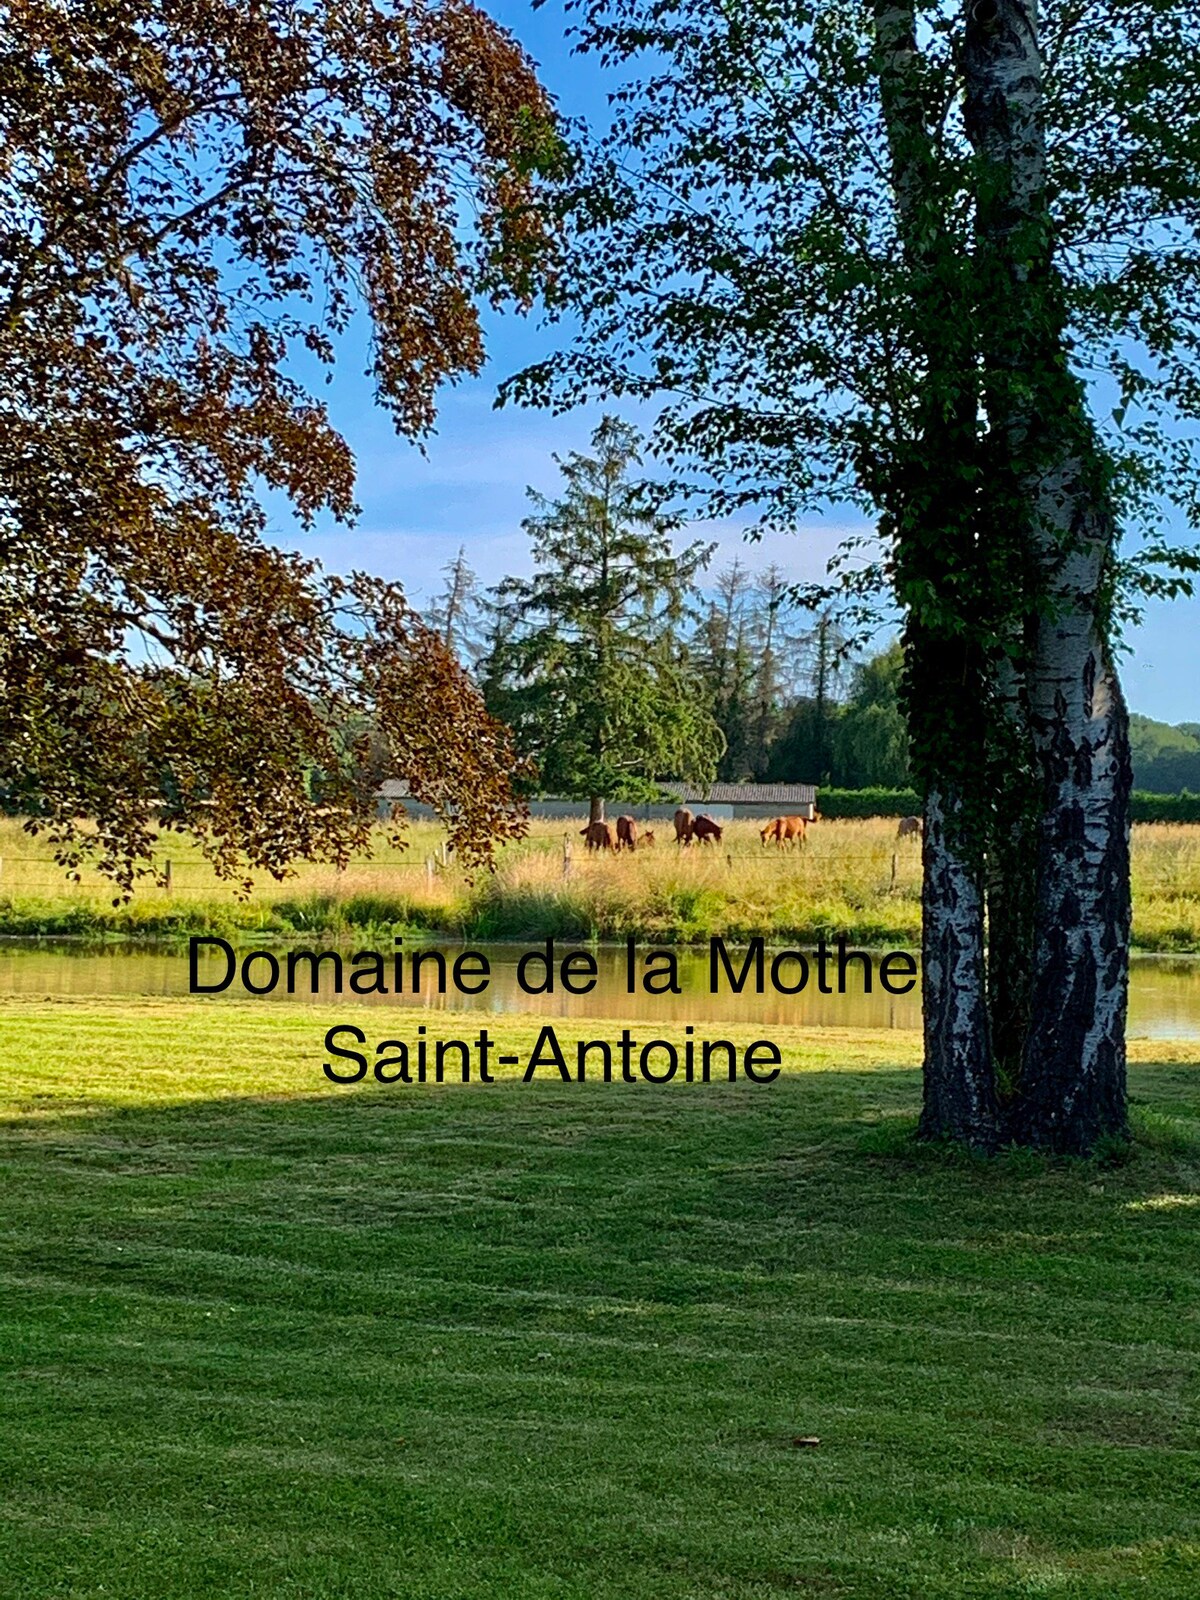 Domaine de la Mothe Saint-Antoine